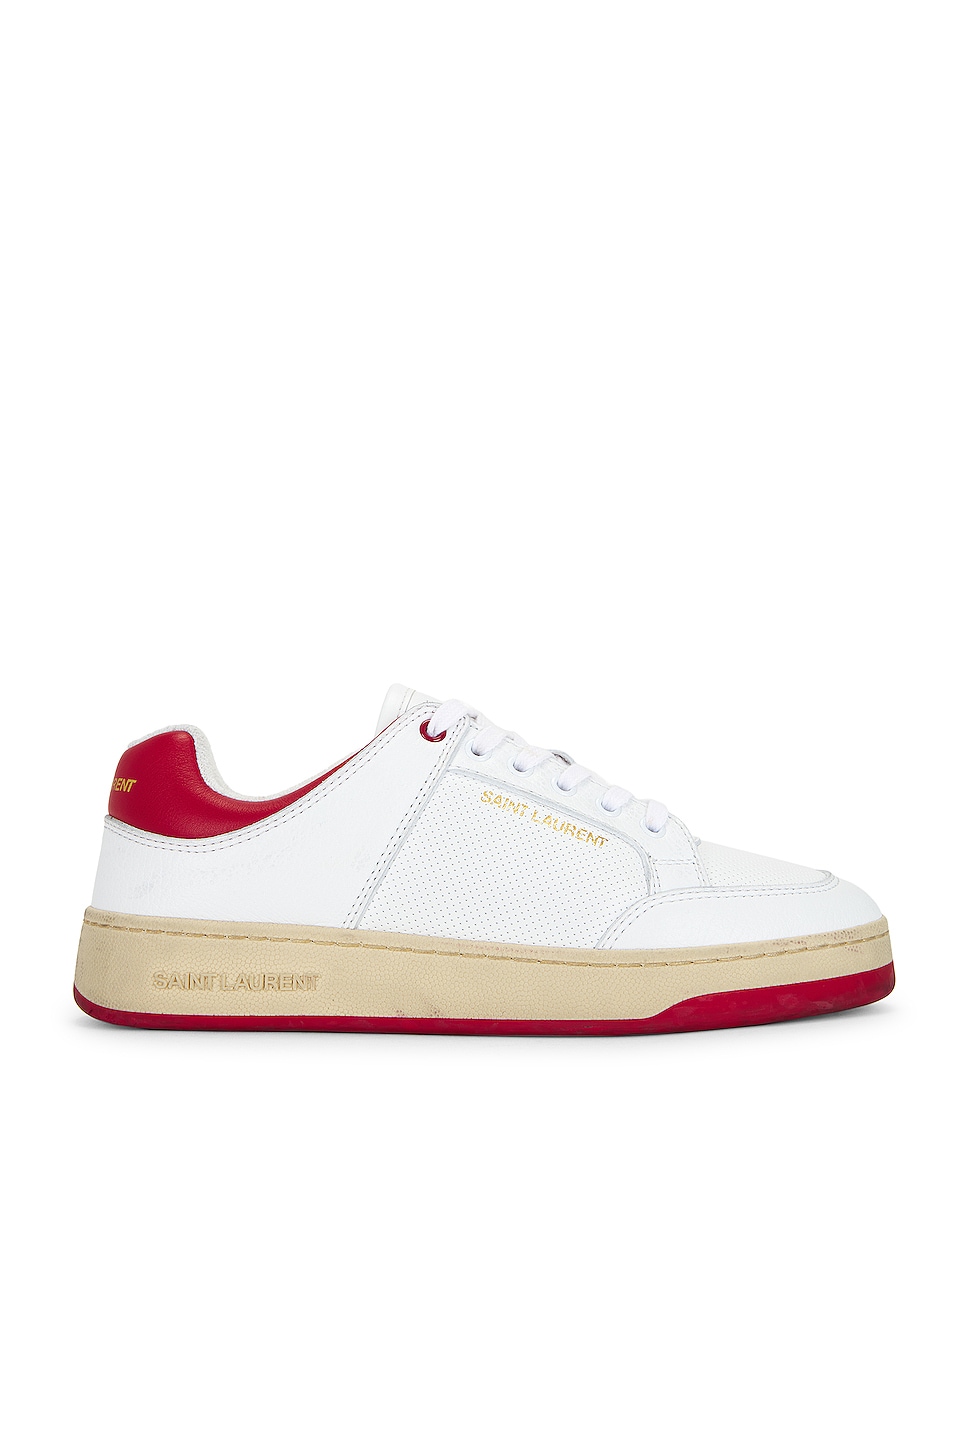 Image 1 of Saint Laurent SL61 Low Top Sneaker in Blanc & Vintage Red